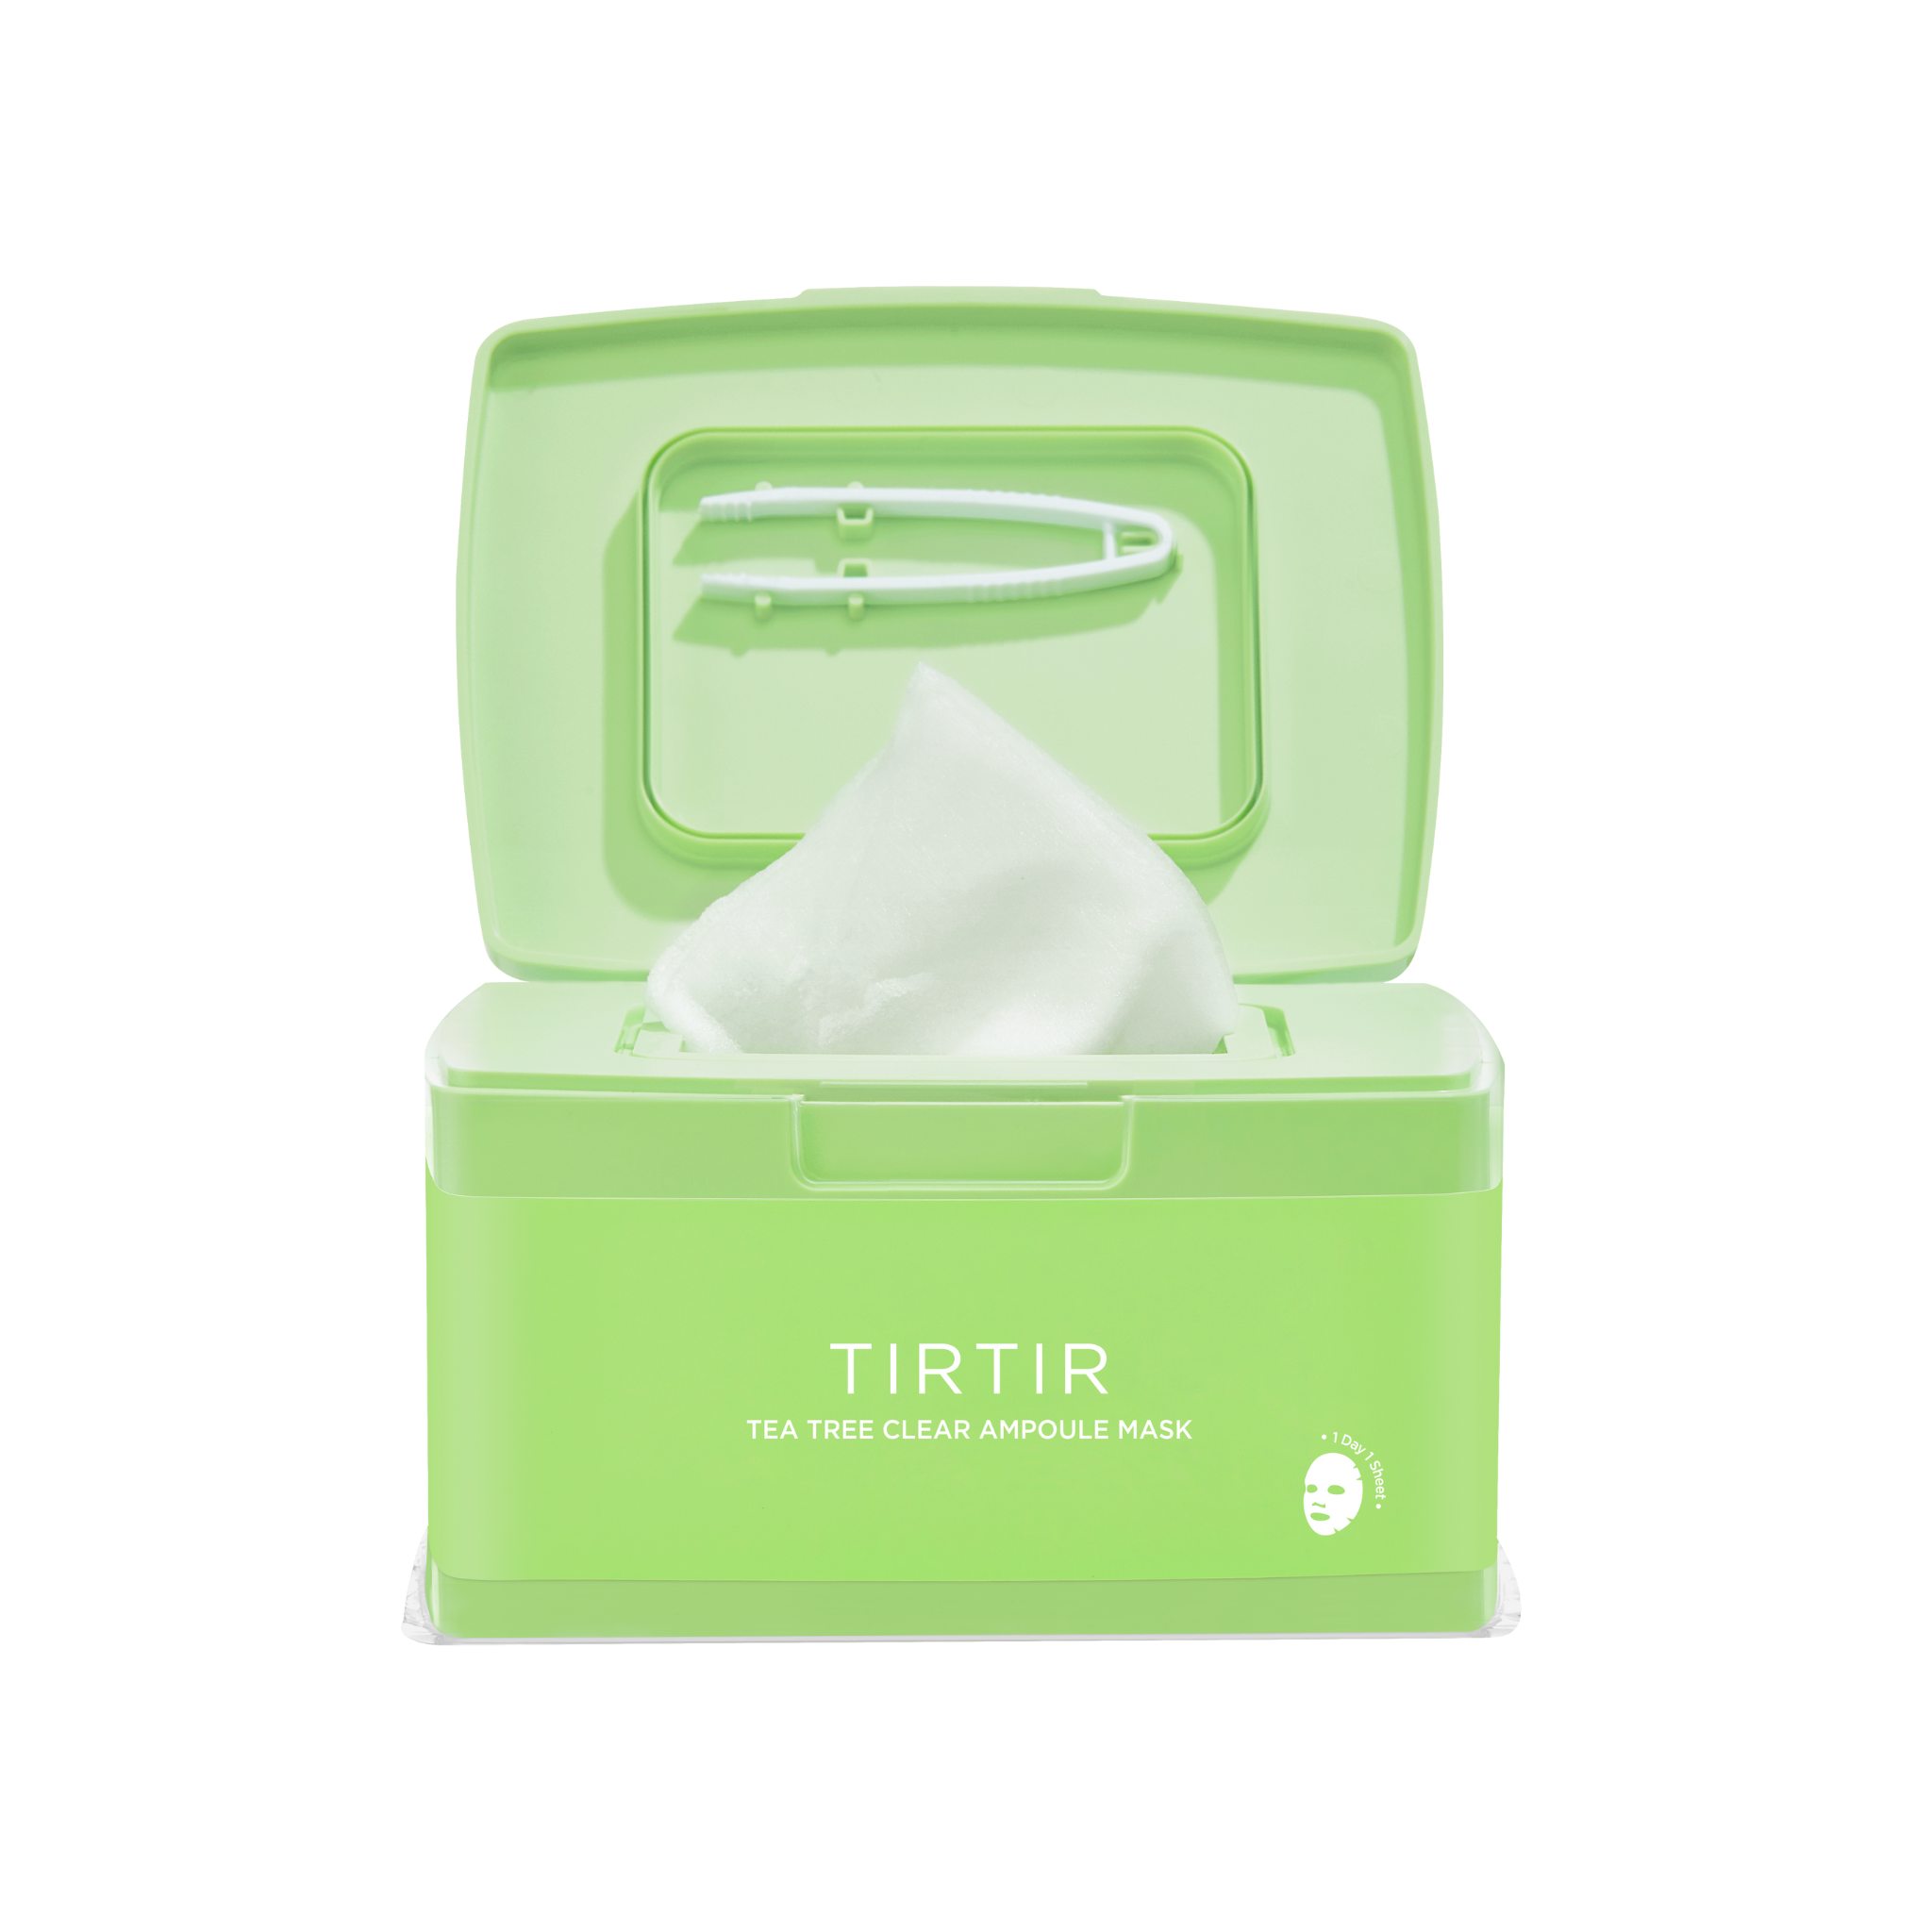 TIRTIR Tea Tree Clear Ampoule Mask (30pcs)